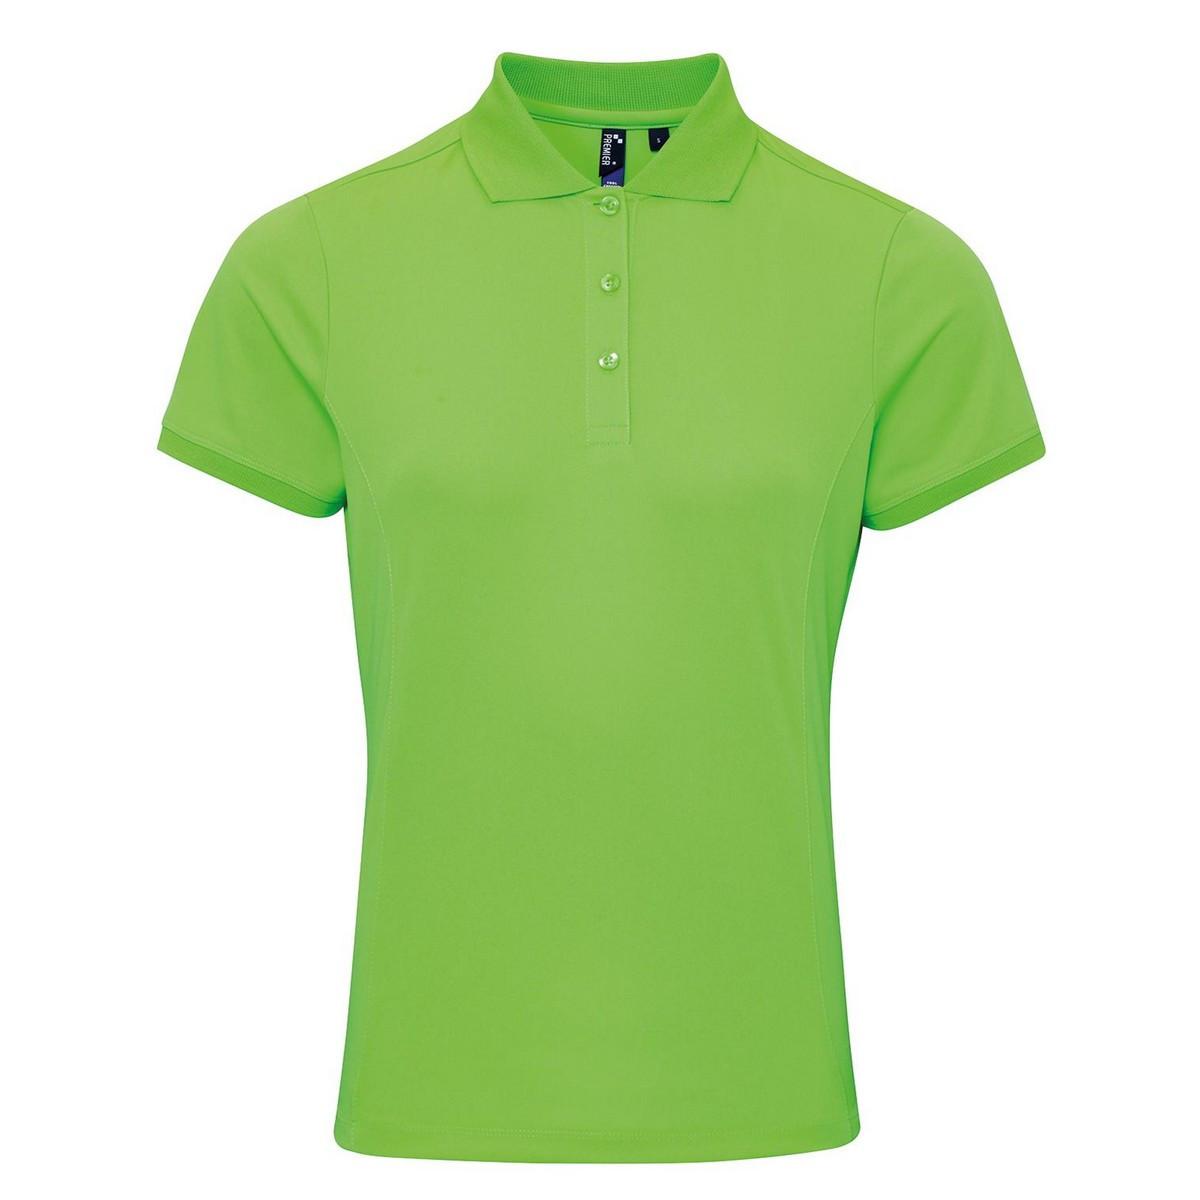 Coolchecker Poloshirt Damen Grün 36 von PREMIER